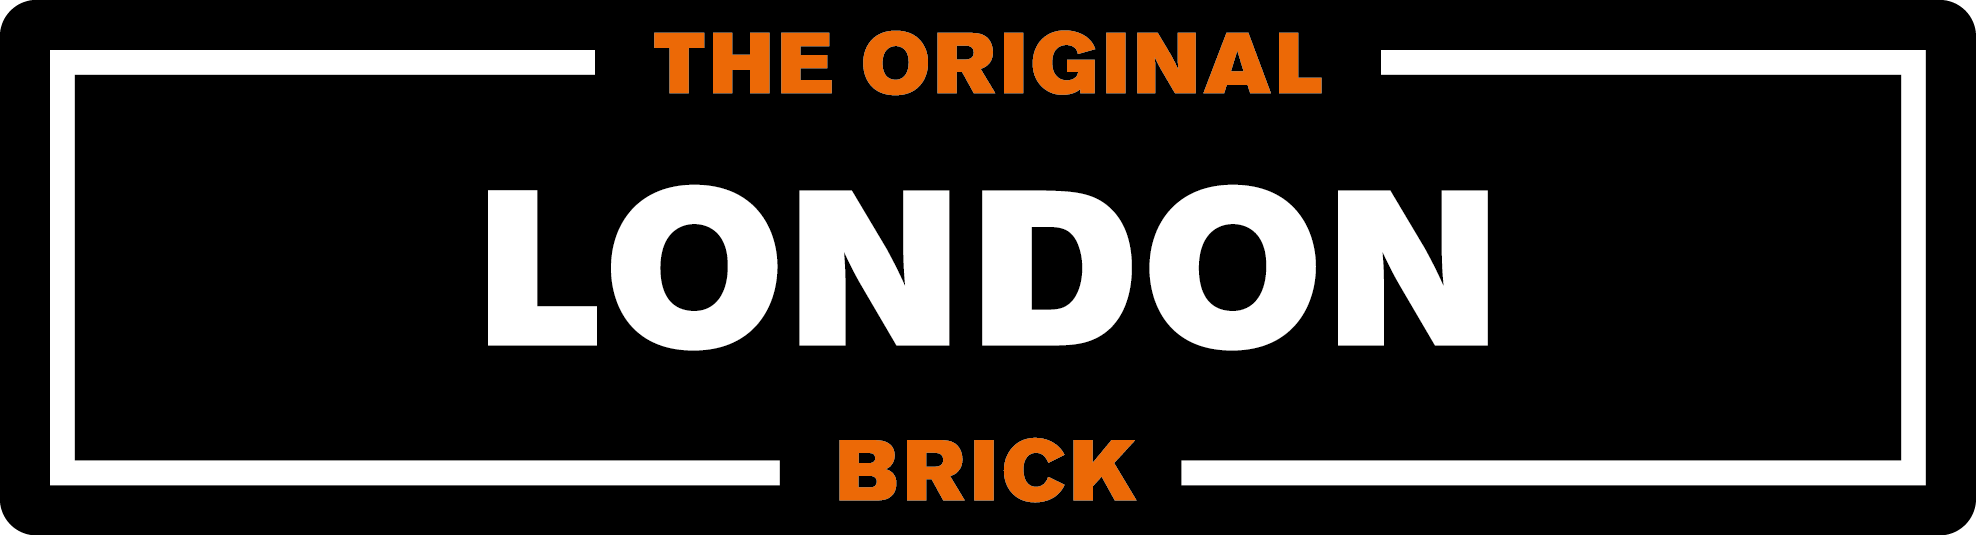 Brick Company Logo - London Brick - Forterra